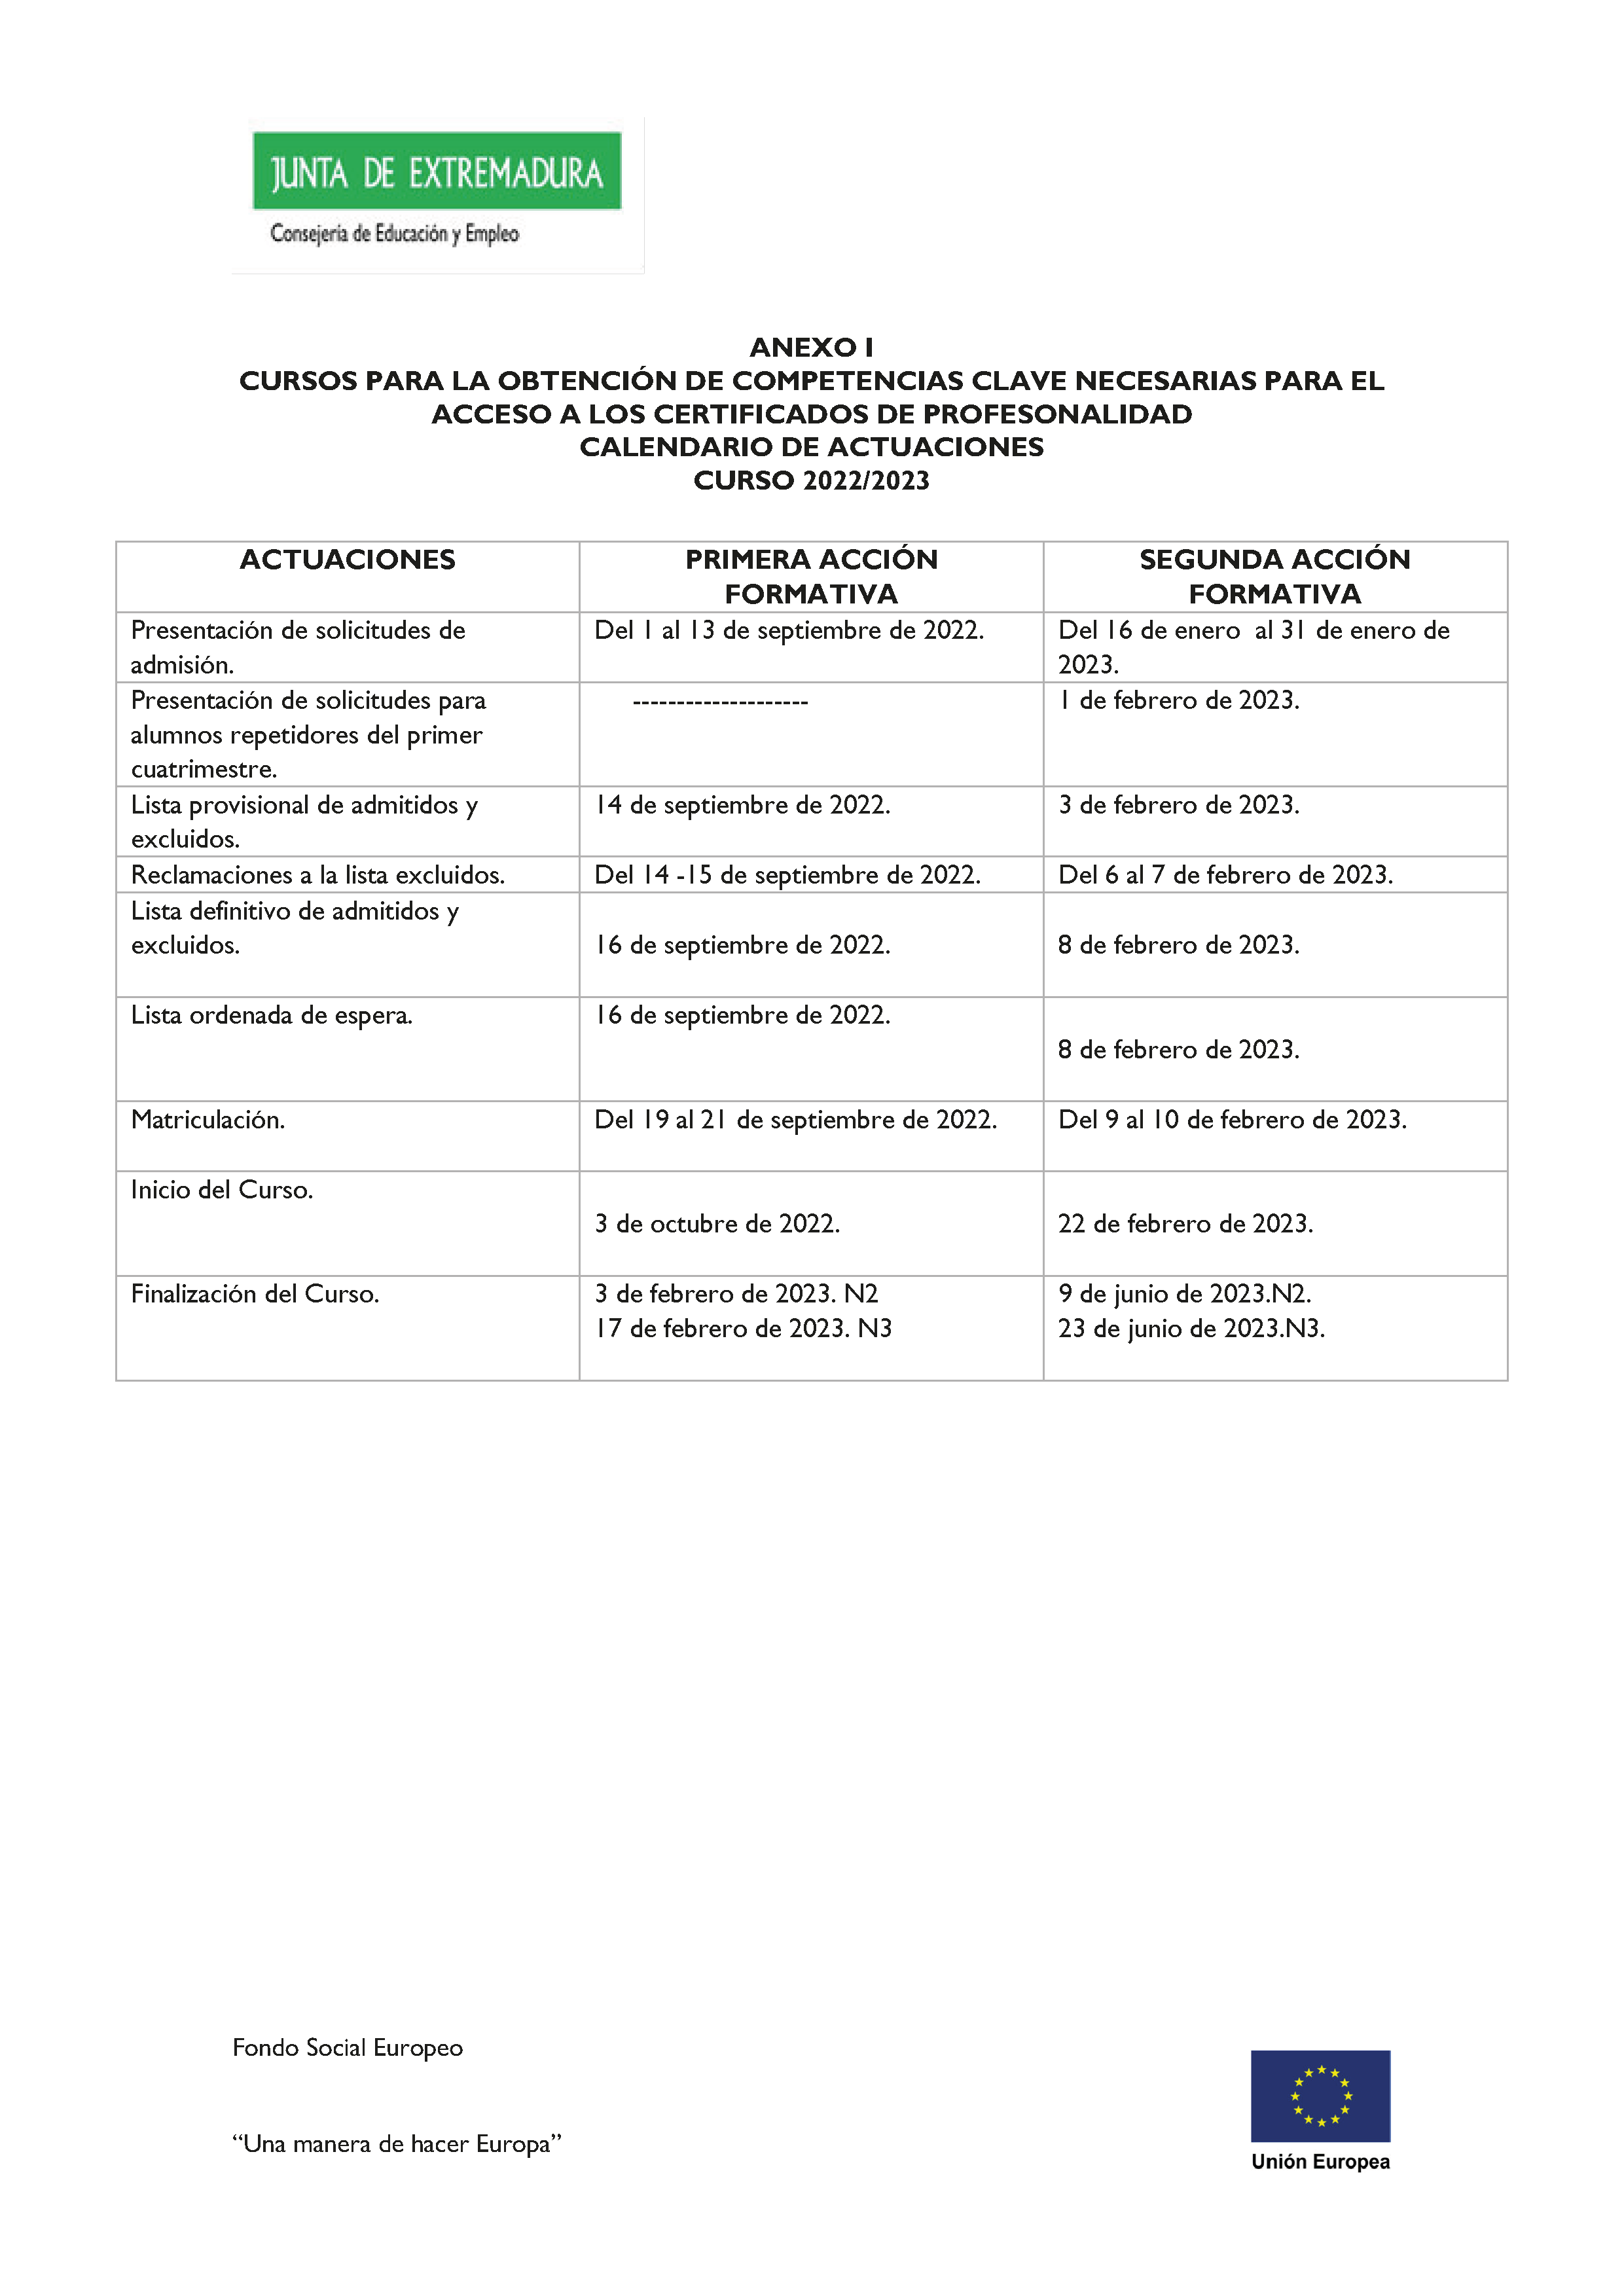 ANEXO CURSOS PARA LA OBTENCION DE COMPETENCIAS CLAVE NECESARIAS PARA EL ACCESO A LOS CERTIFICADOS DE PROFESIONALIDAD Pag 1